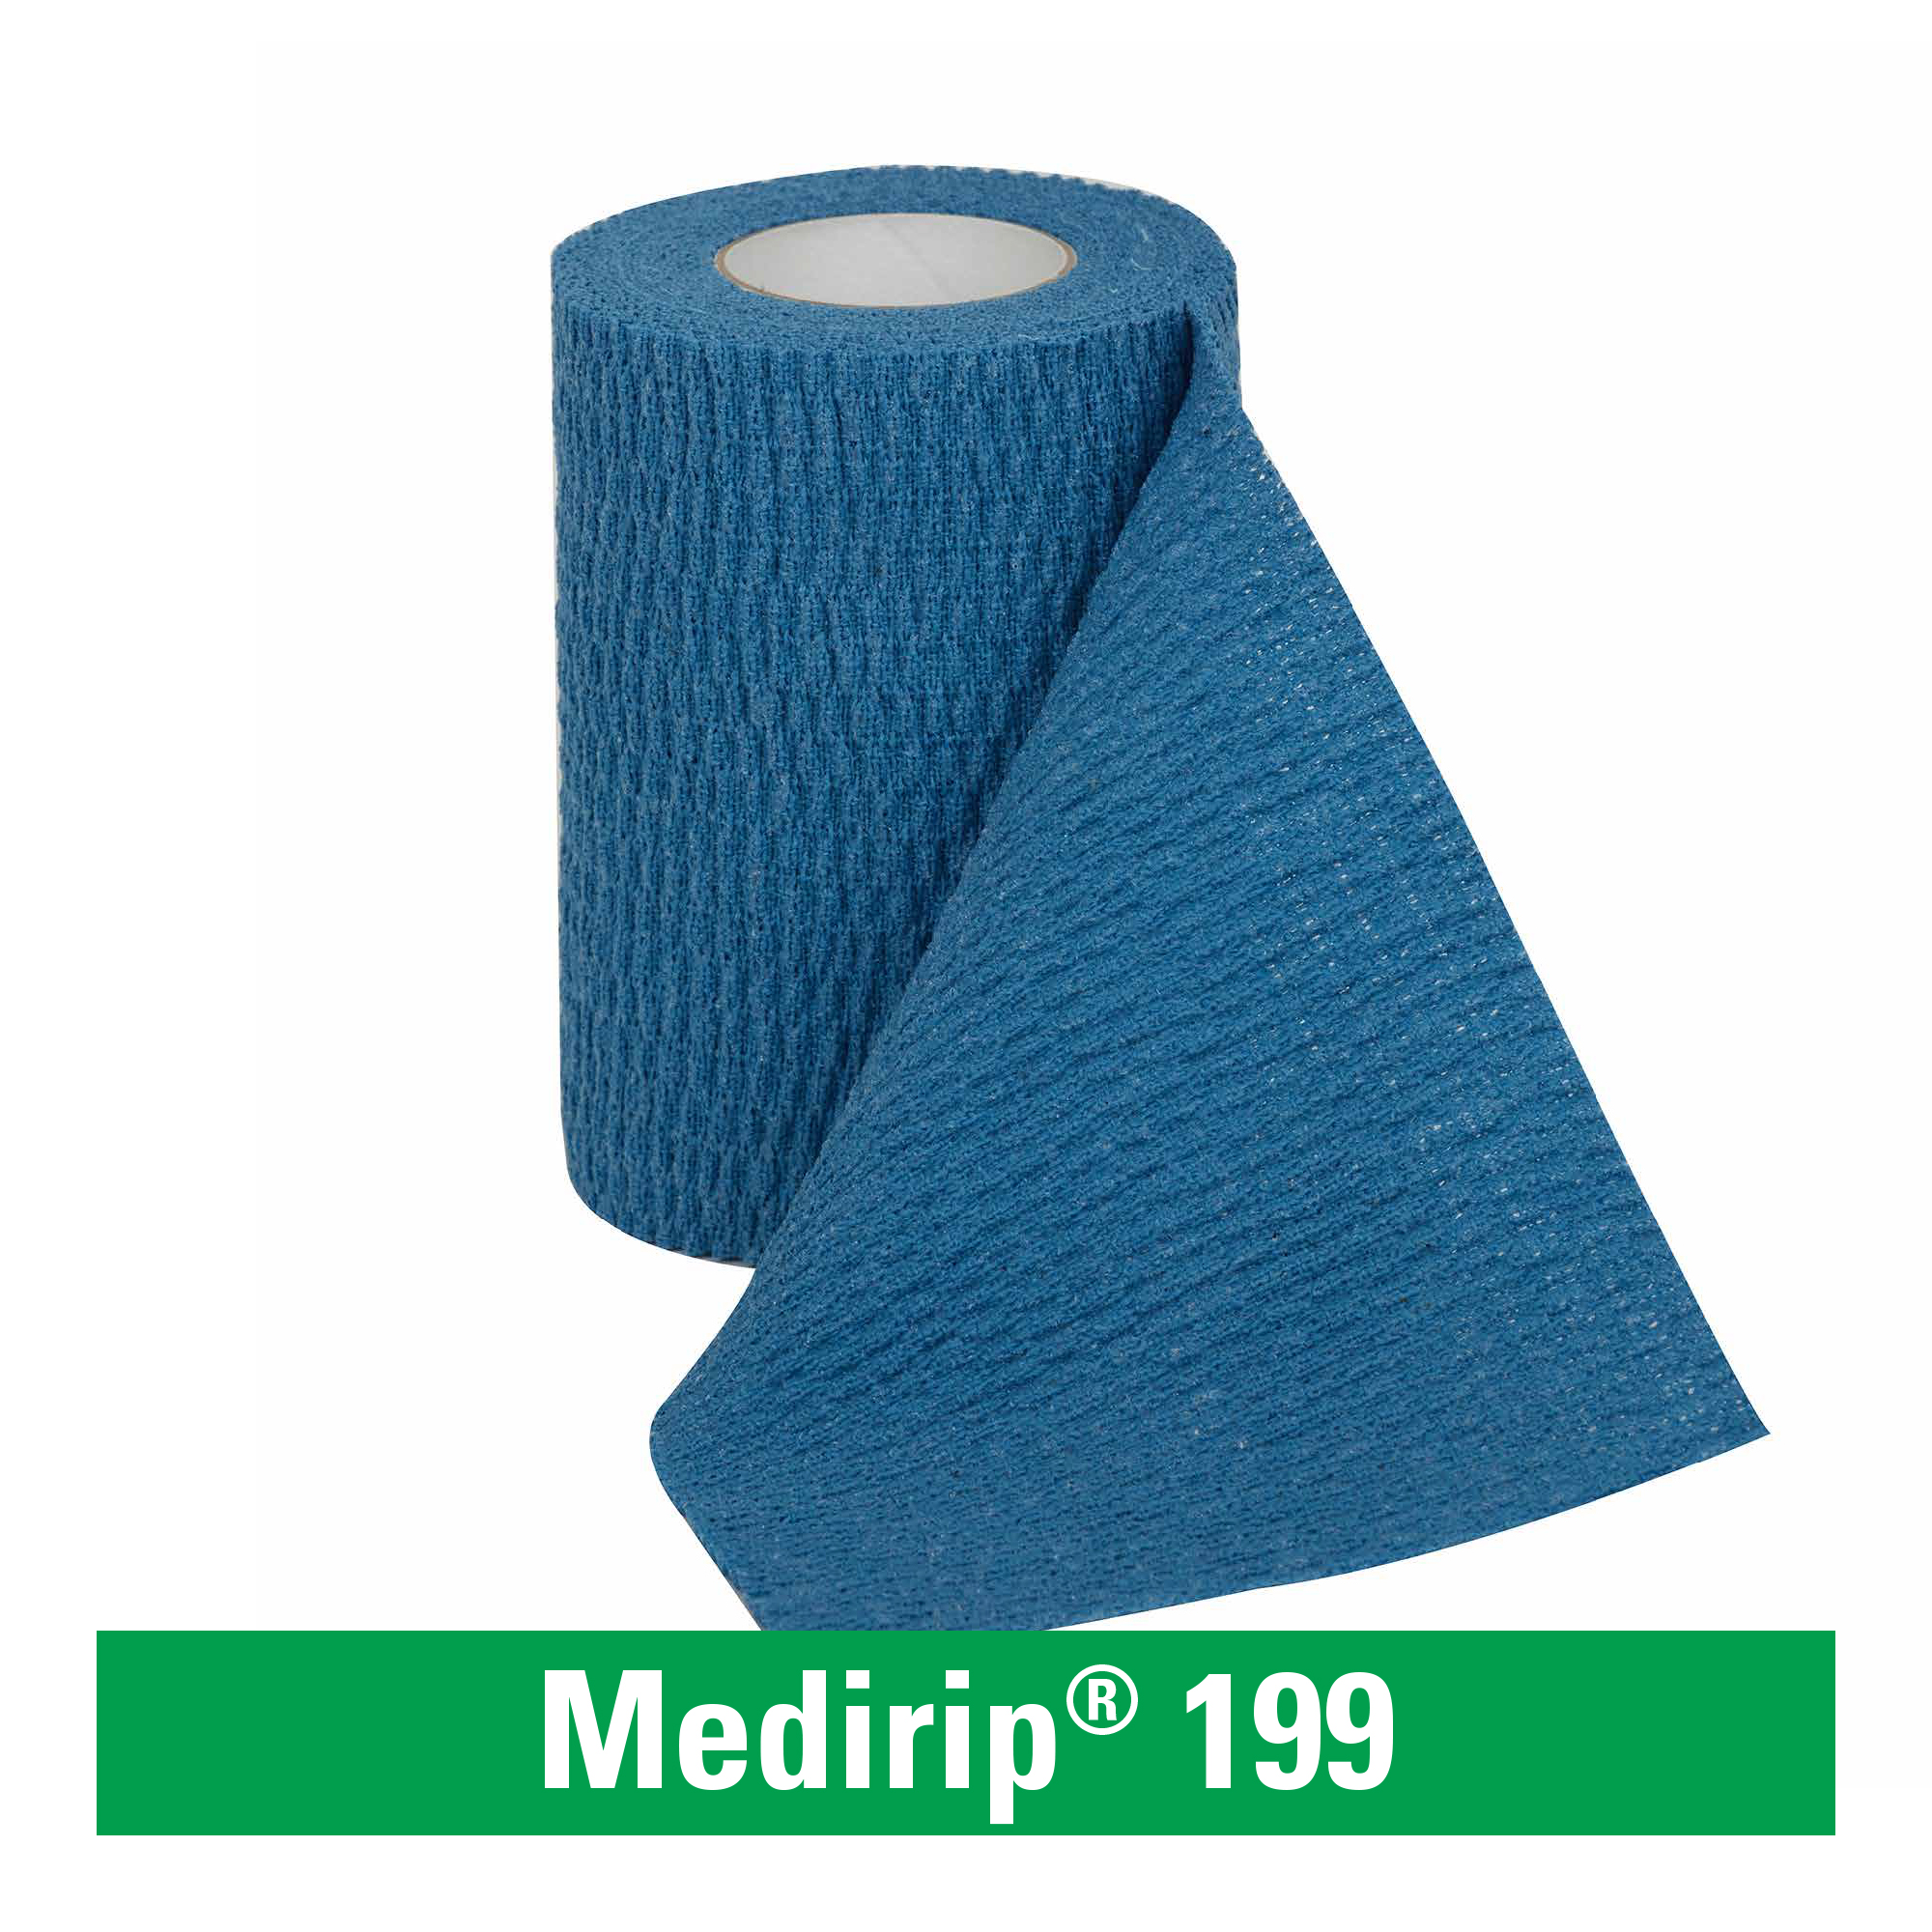 Medirip® 199